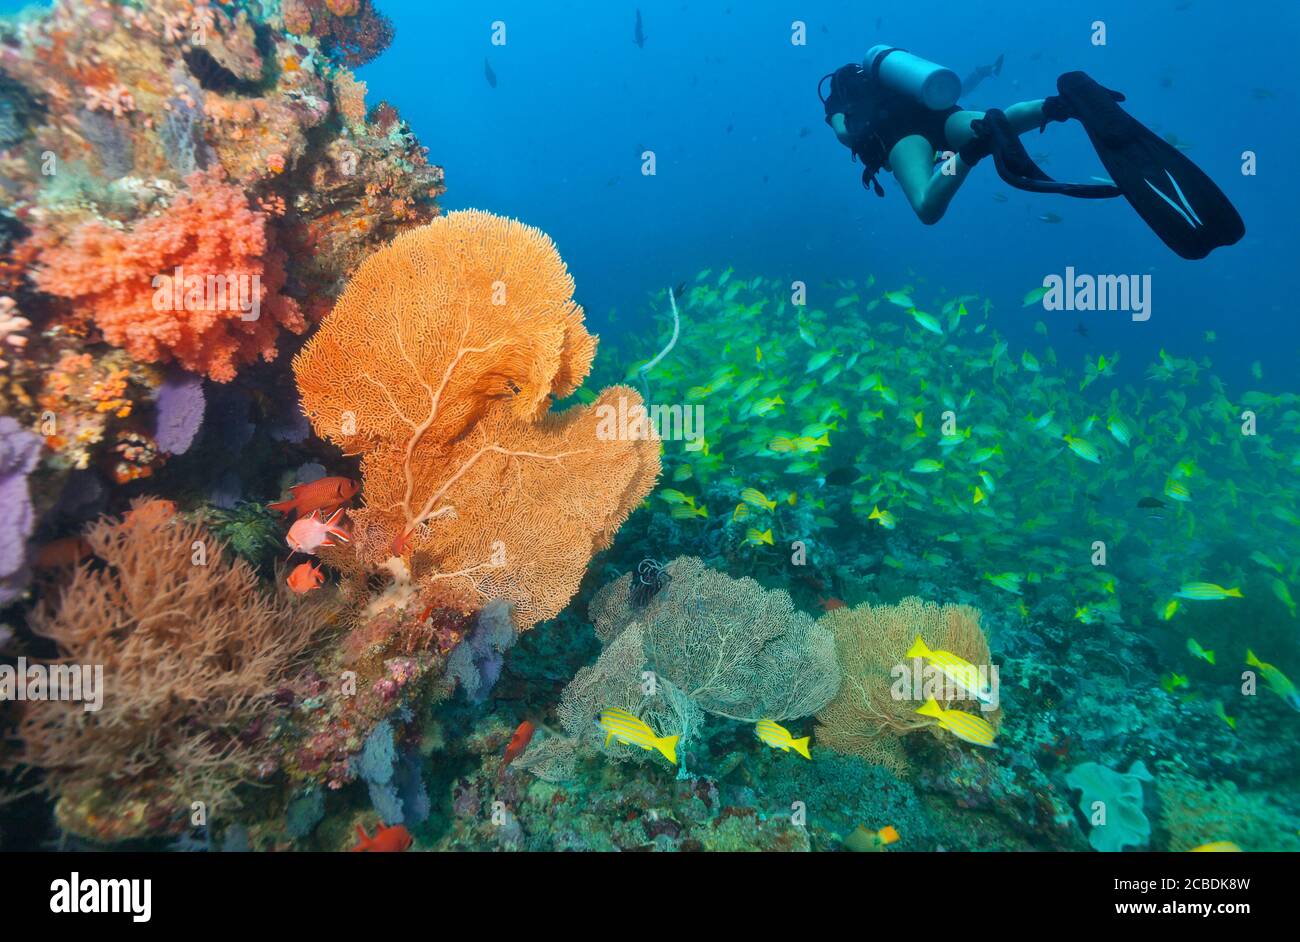 Giovane donna scuba diver esplorare Coral reef, attività subacquee Foto Stock